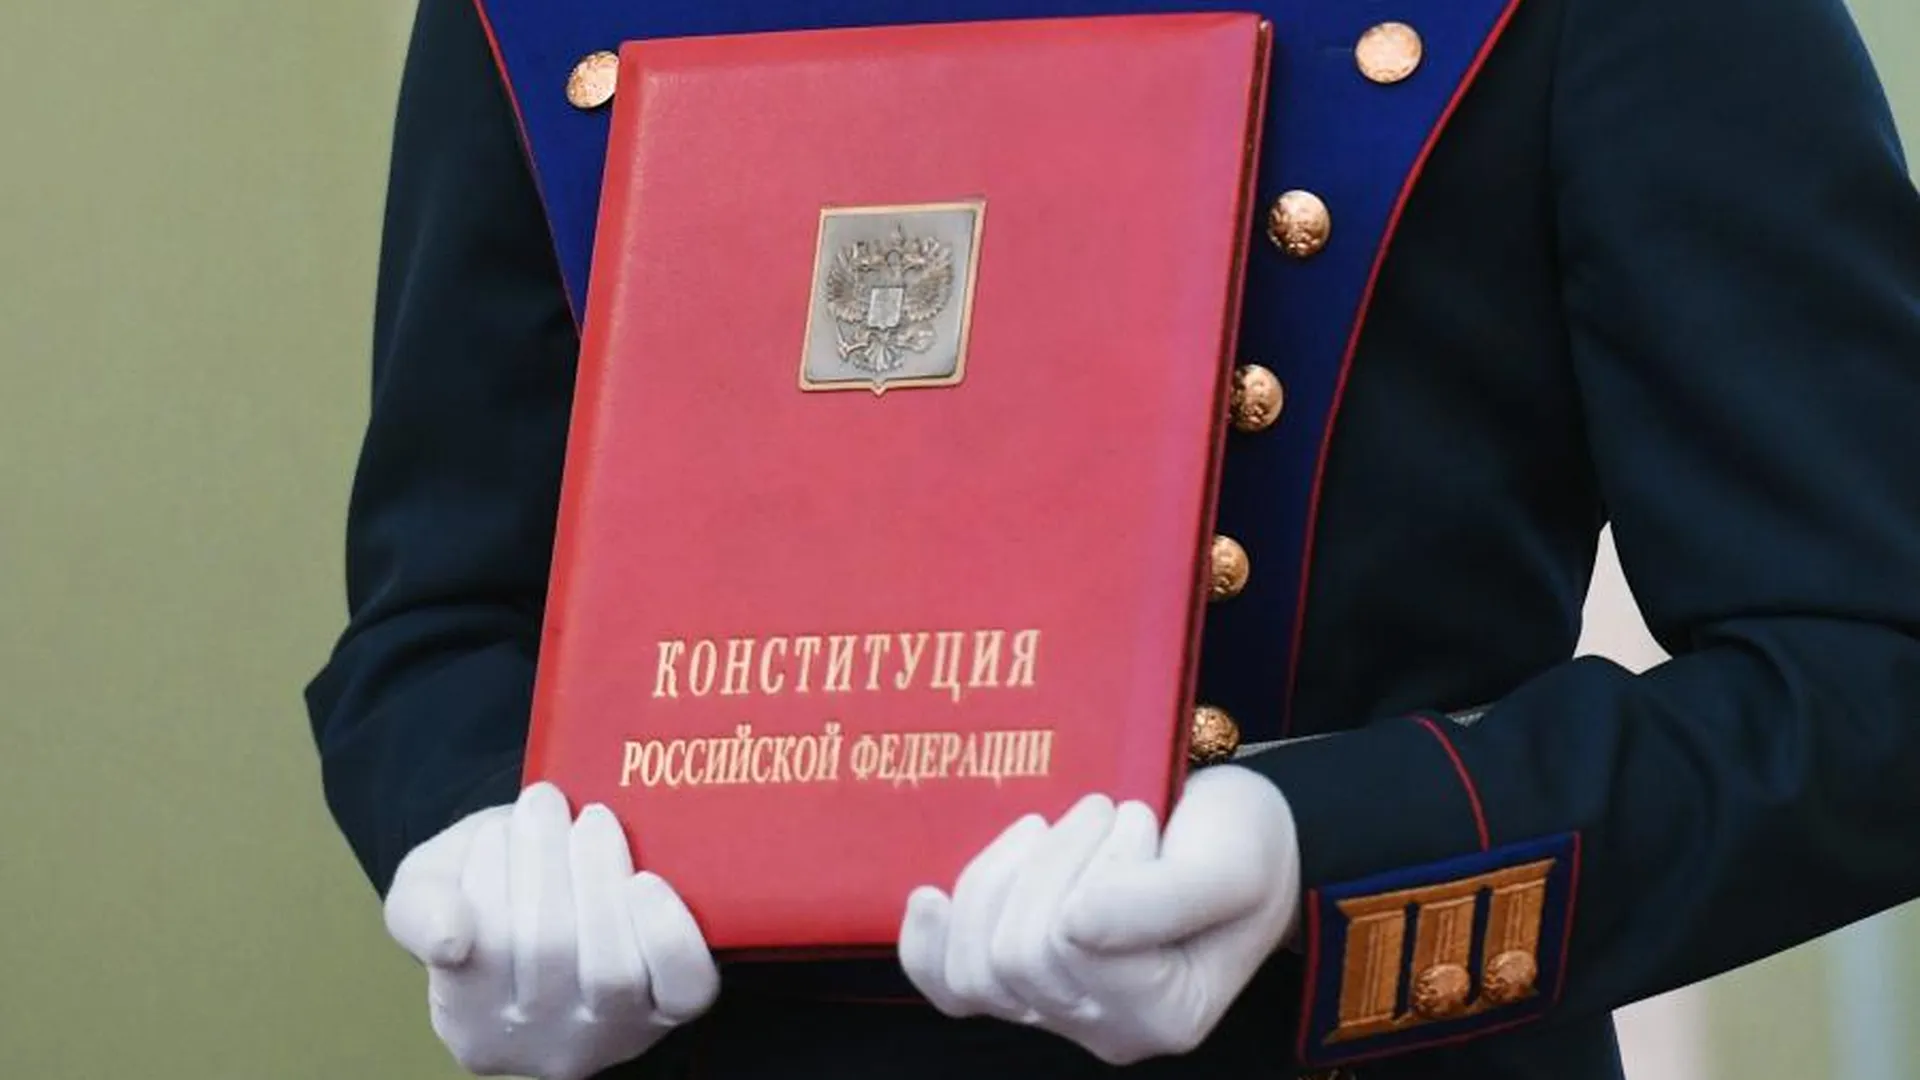 Солдаты Президентского полка вносят специальный экземпляр Конституции РФ на церемонии инаугурации президента РФ Владимира Путина в Кремле